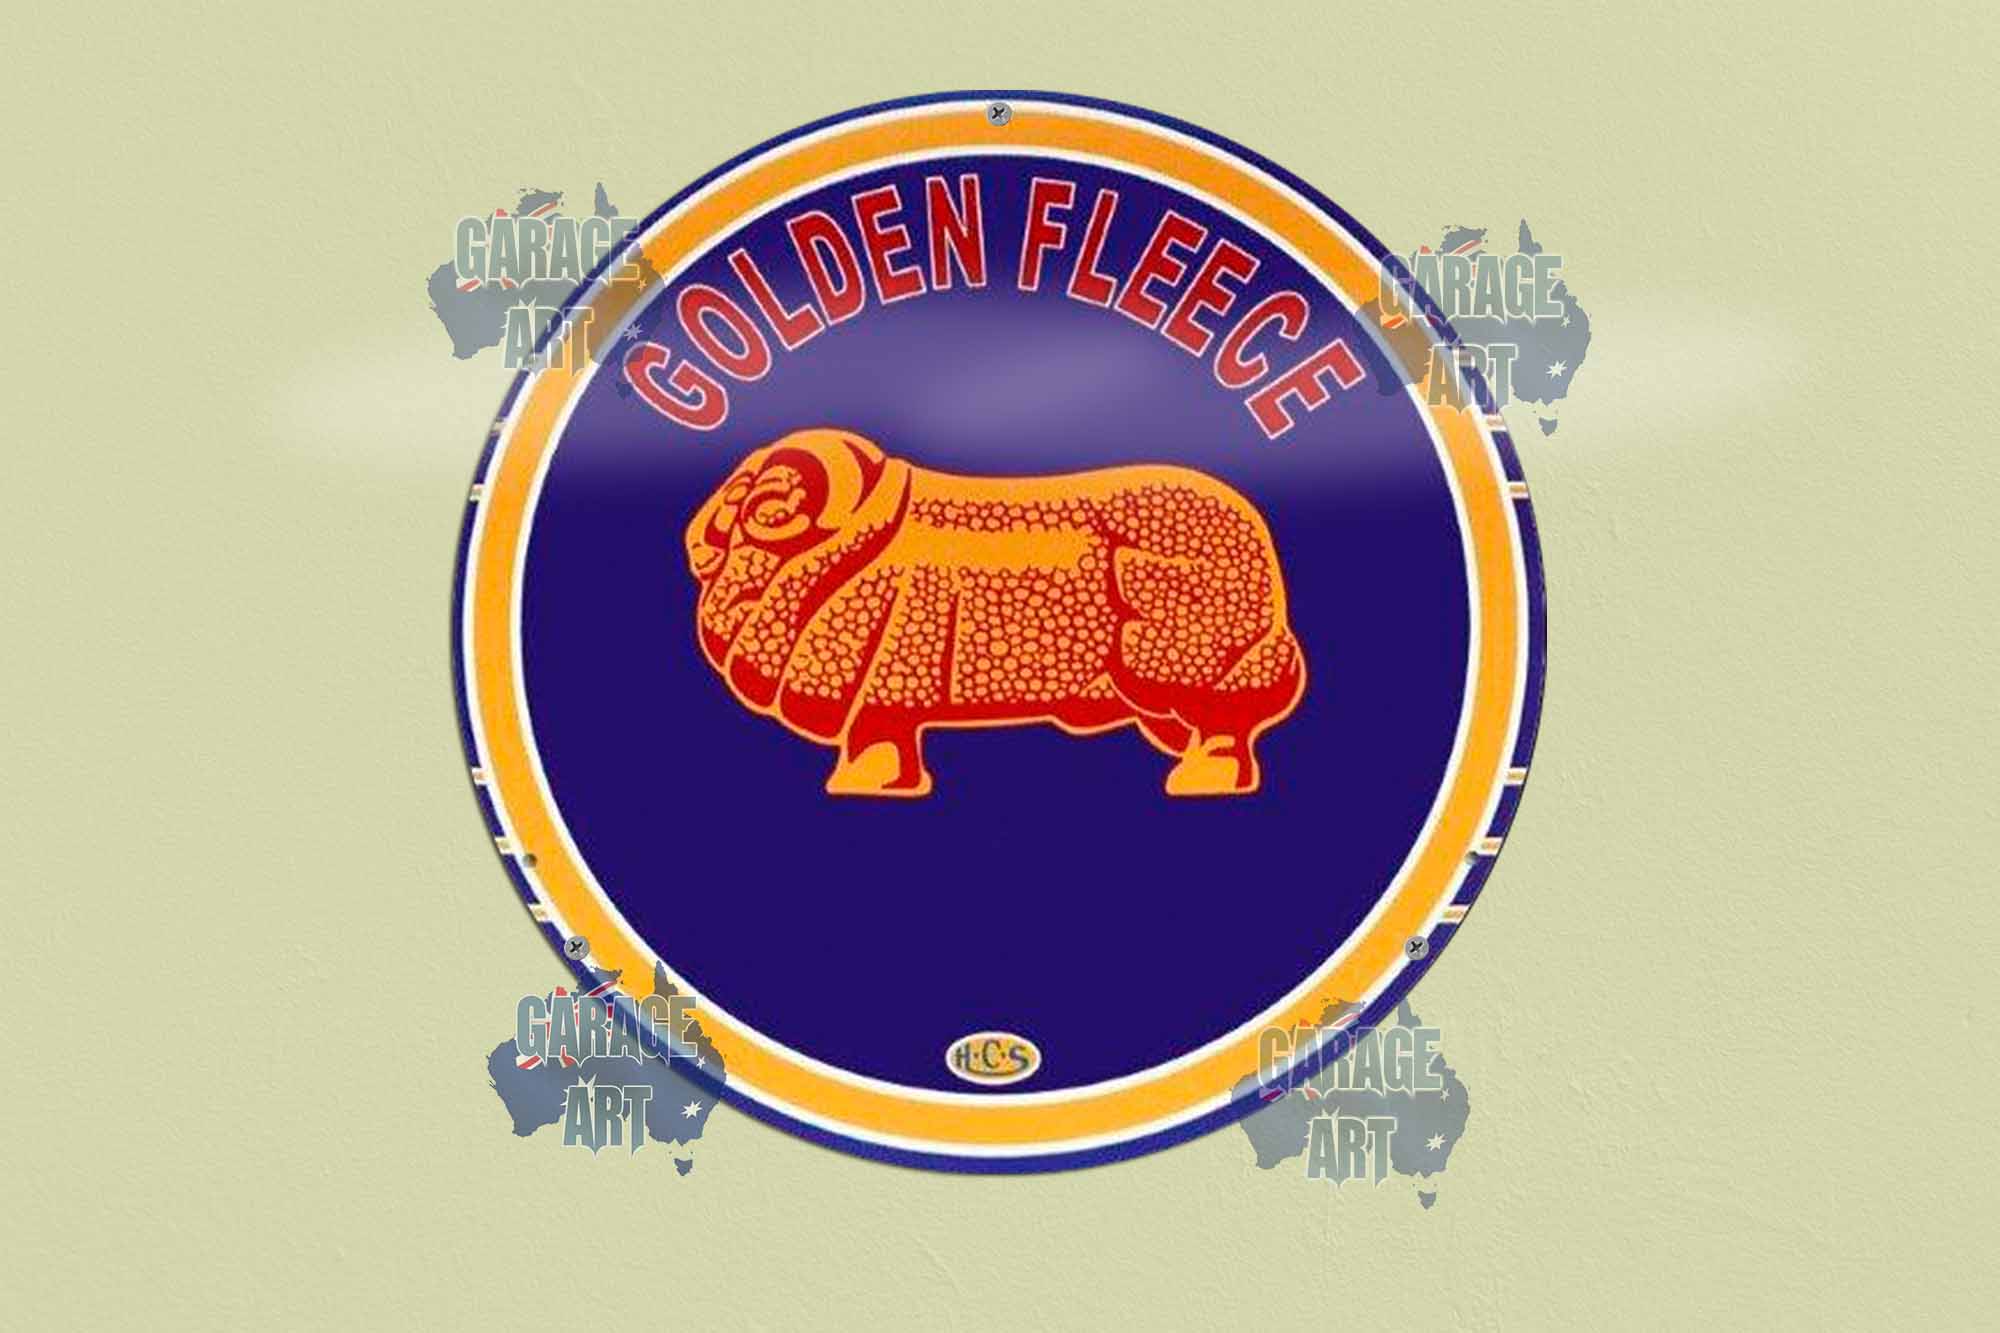 Golden Fleece ram oil thumb 355mmDia Tin Sign freeshipping - garageartaustralia